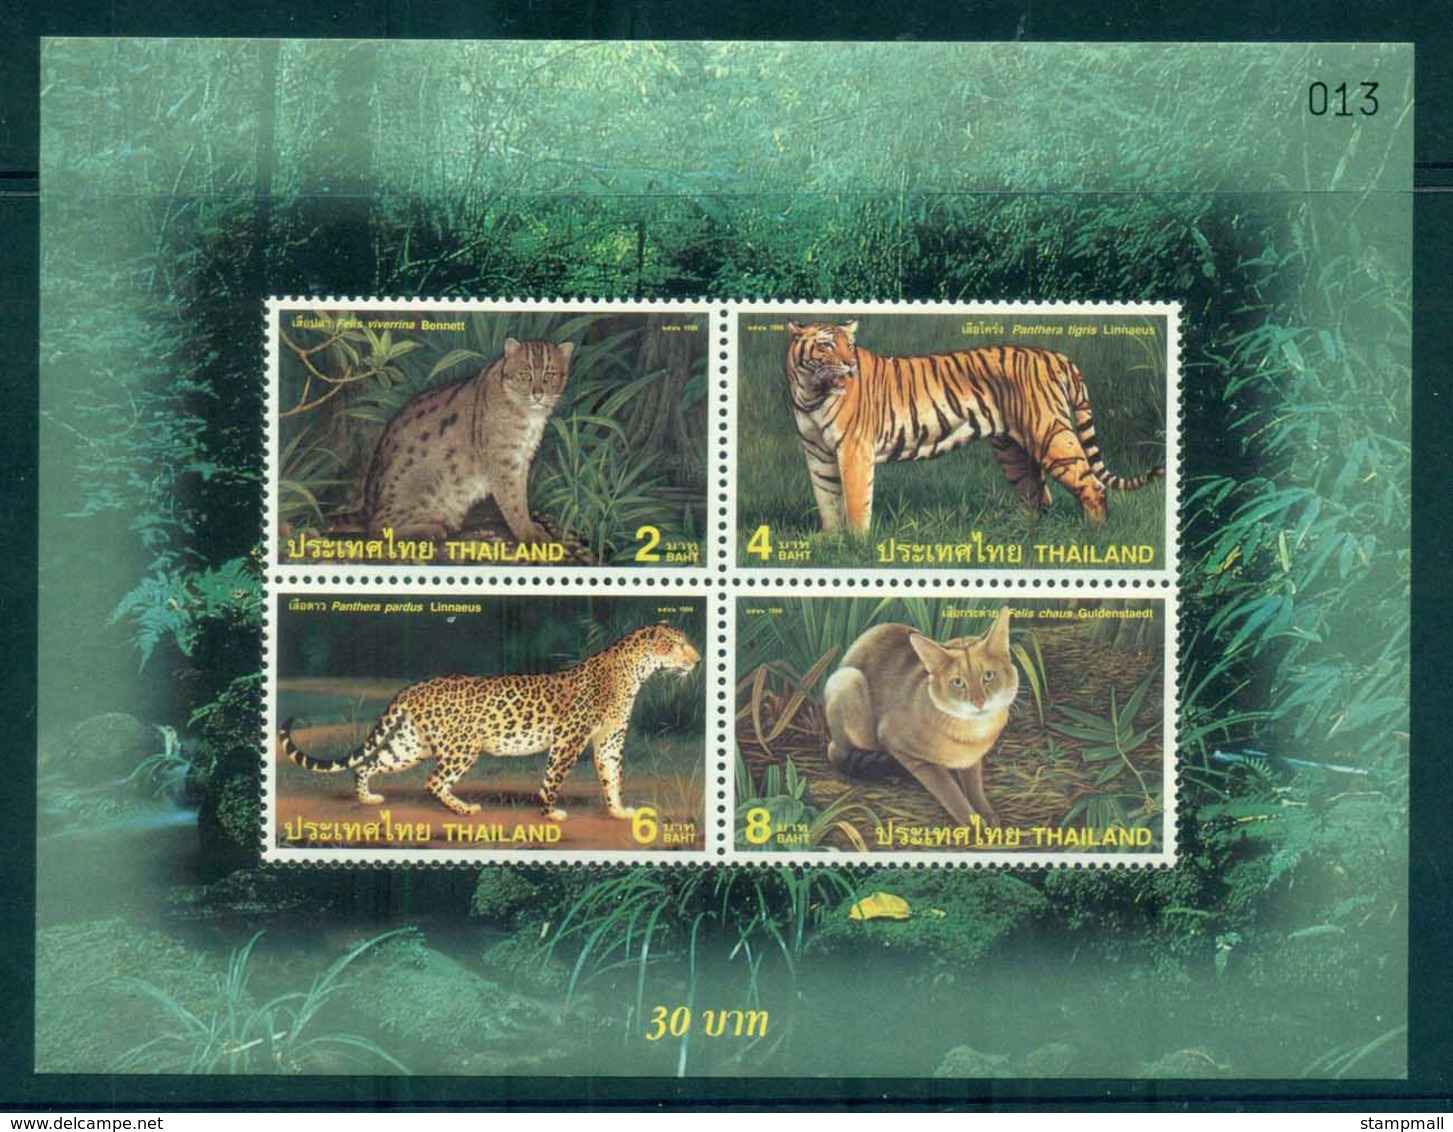 Thailand 1998 Big Cats, Leopard, Tiger MS MUH Lot82726 - Thailand